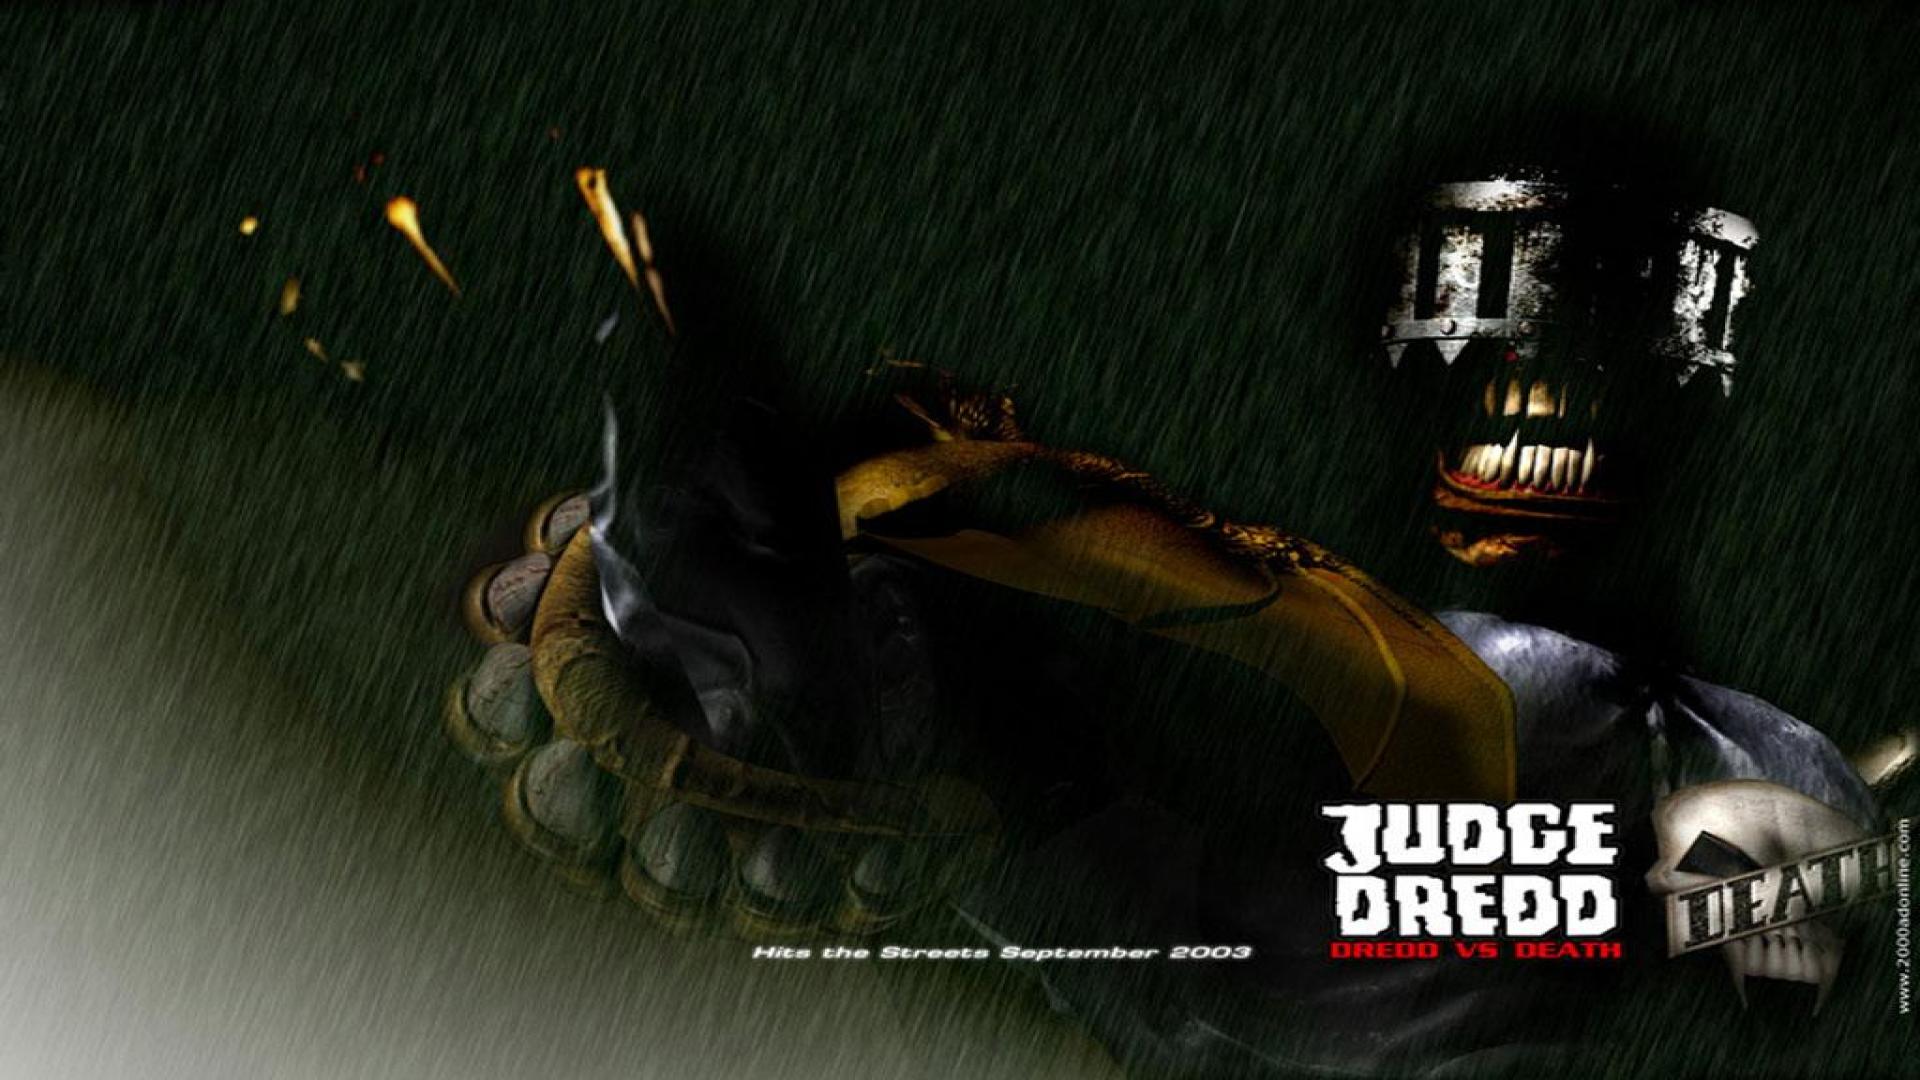 Judge Dredd Vs Death Wallpaper